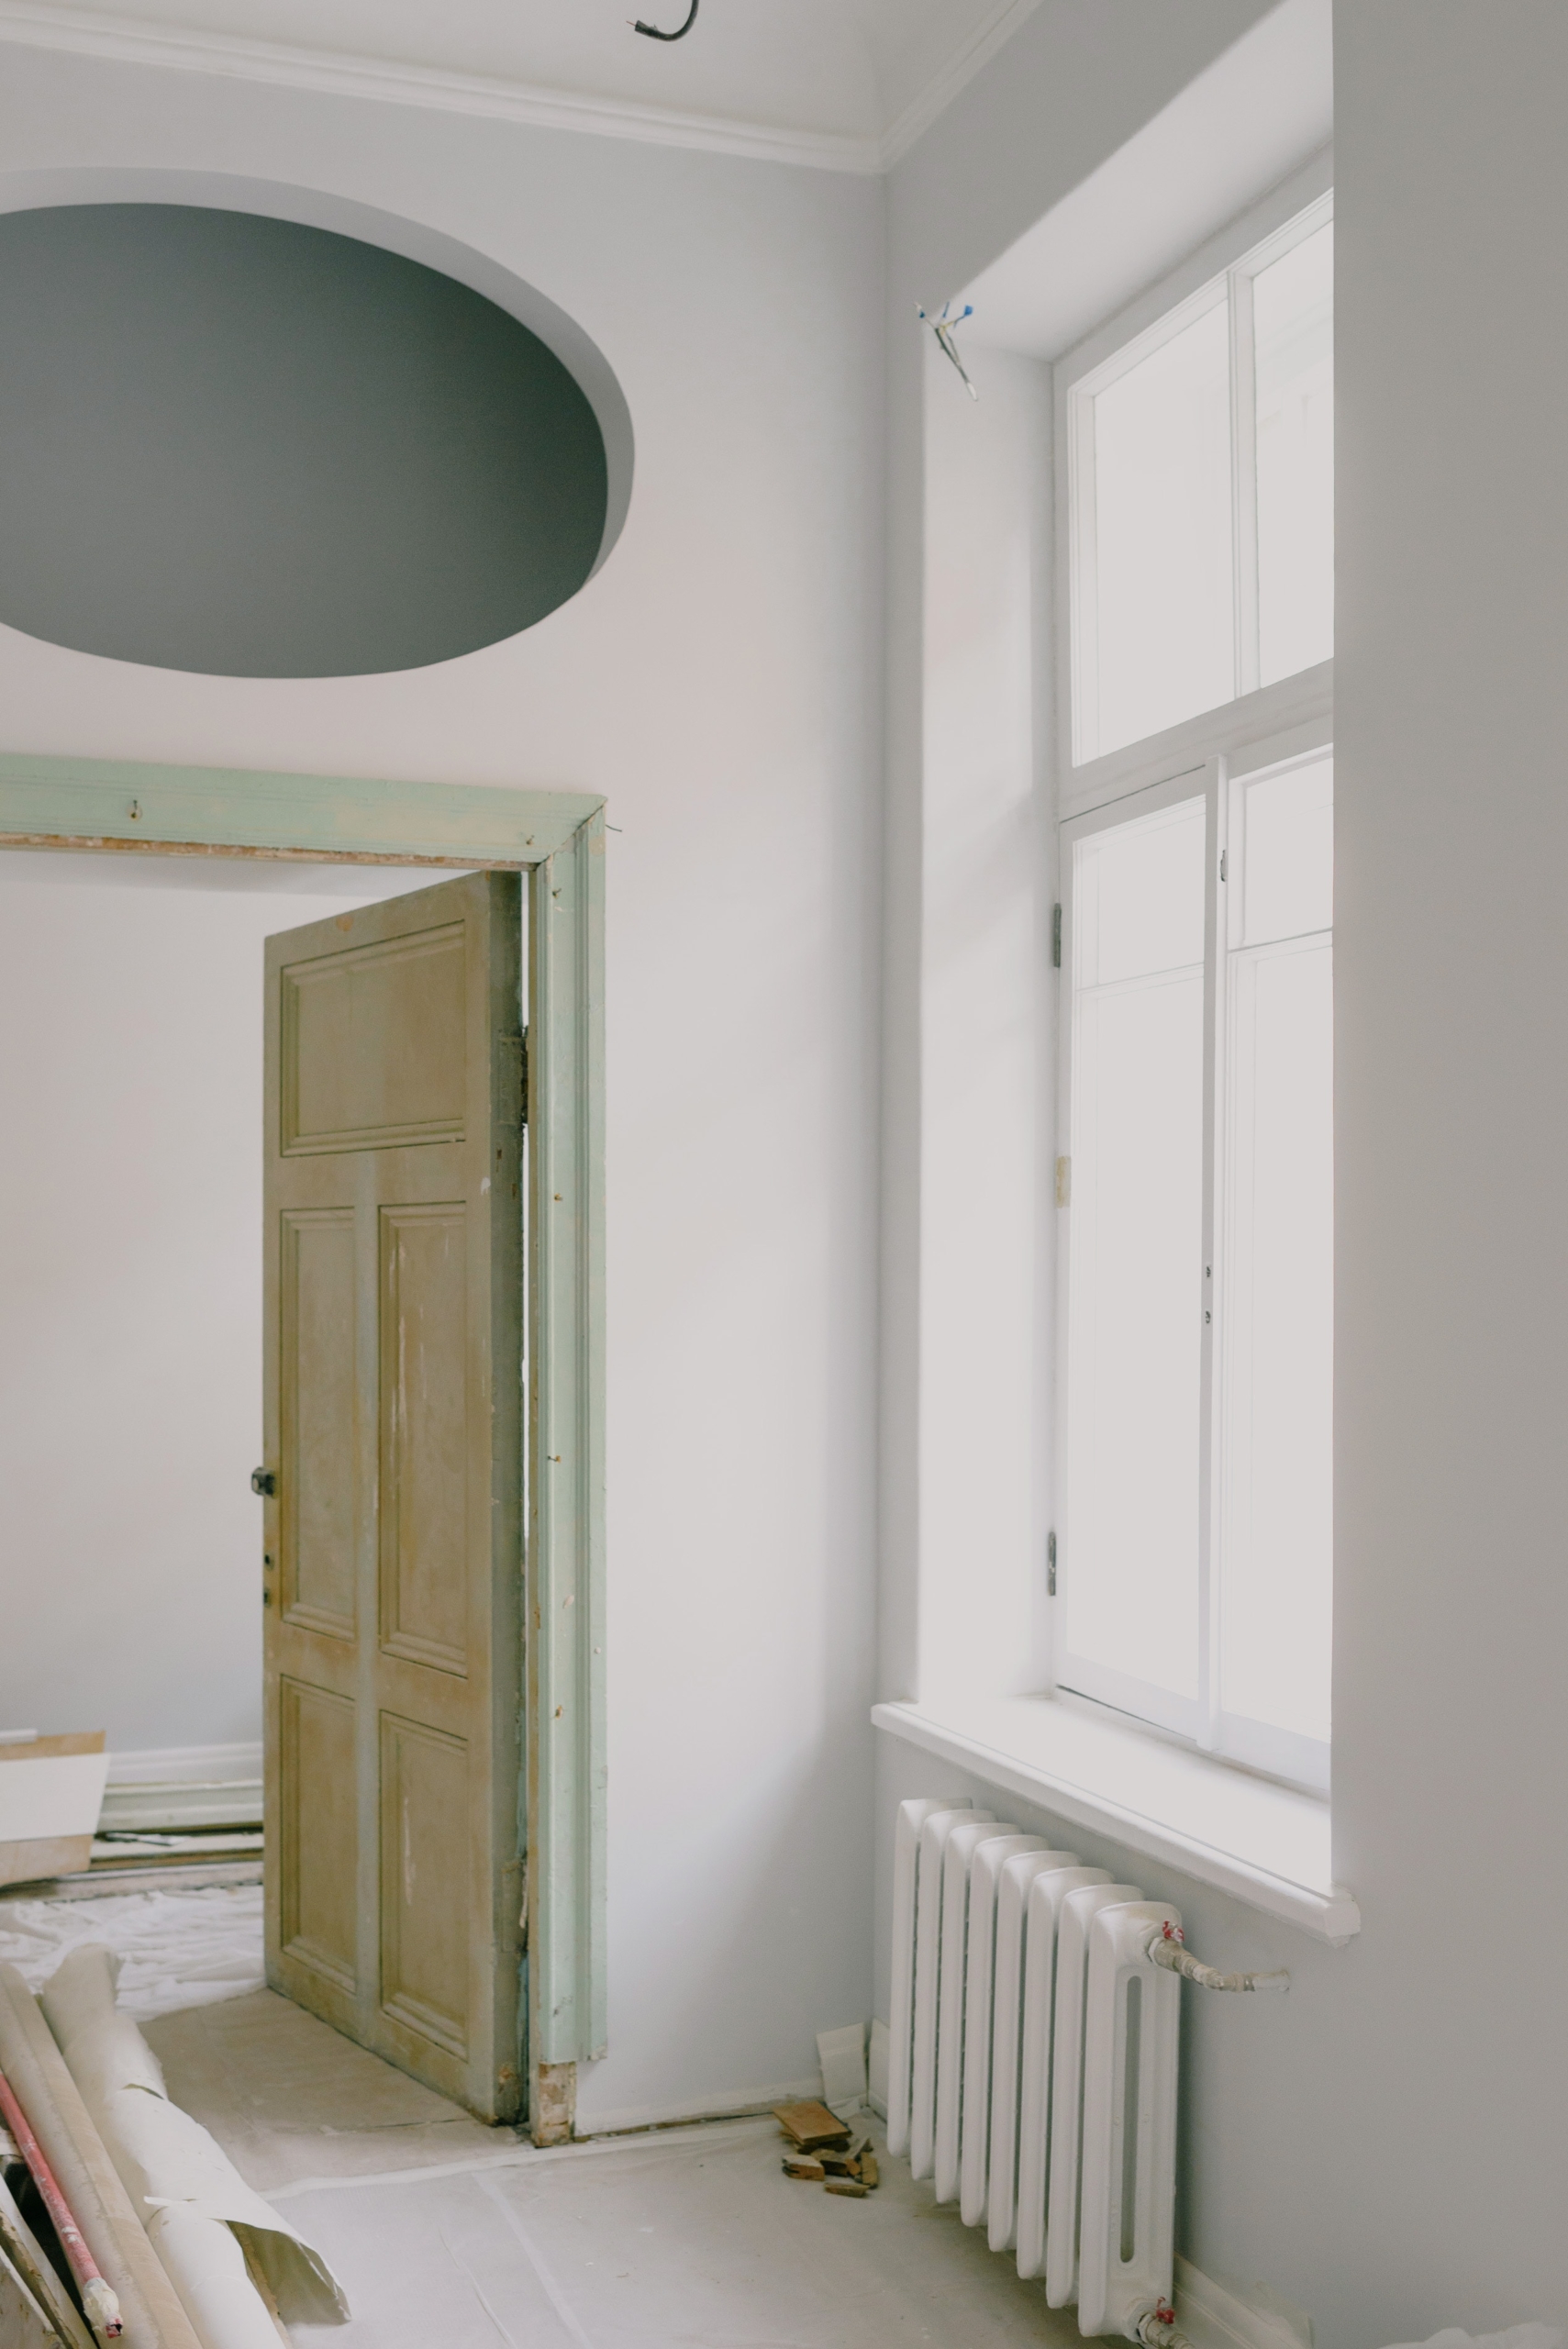 Imagen de una ventana con puerta y radiador clásico con materiales de obra en el suelo indicando reforma integral de una vivienda.